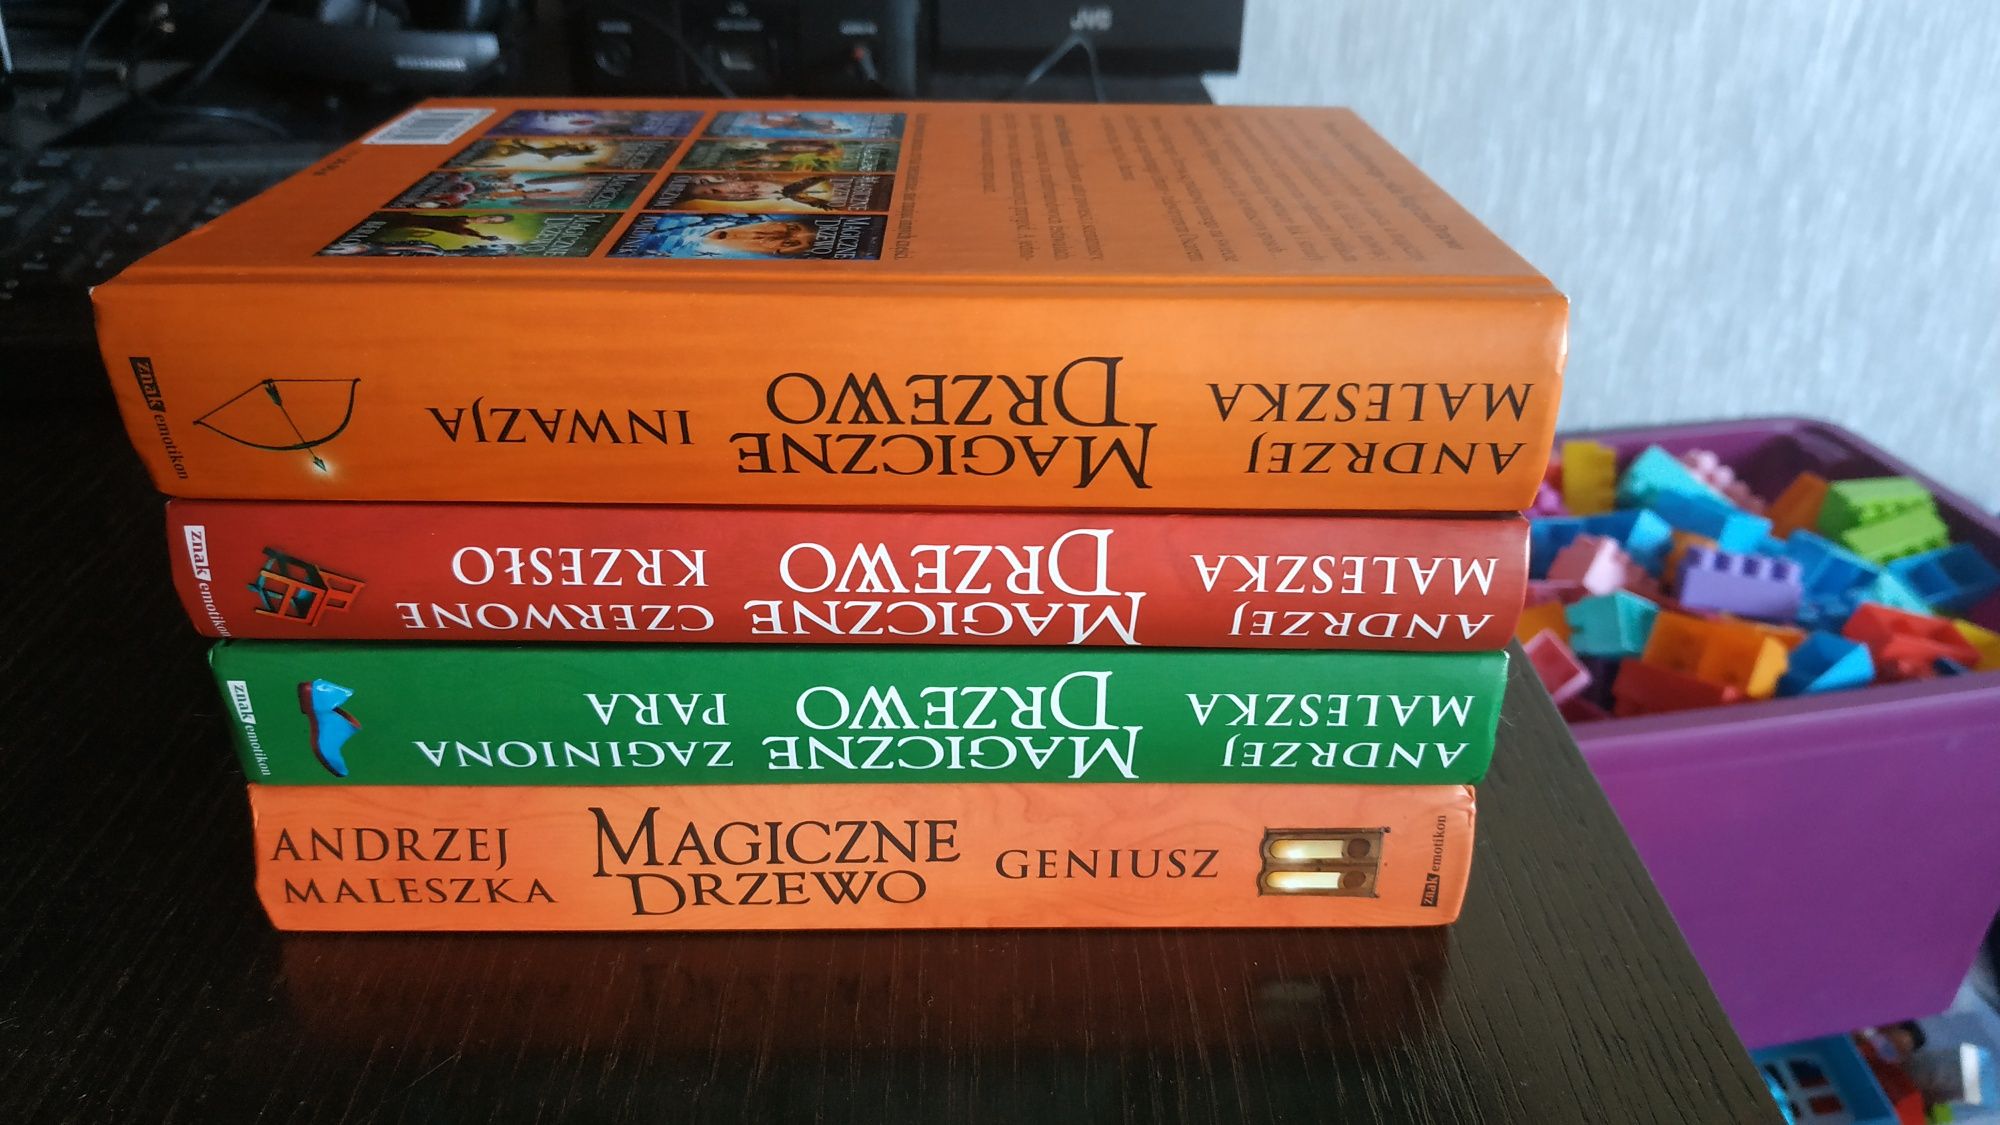 Magiczne drzewo 4 książki z serii Andrzej Maleszka